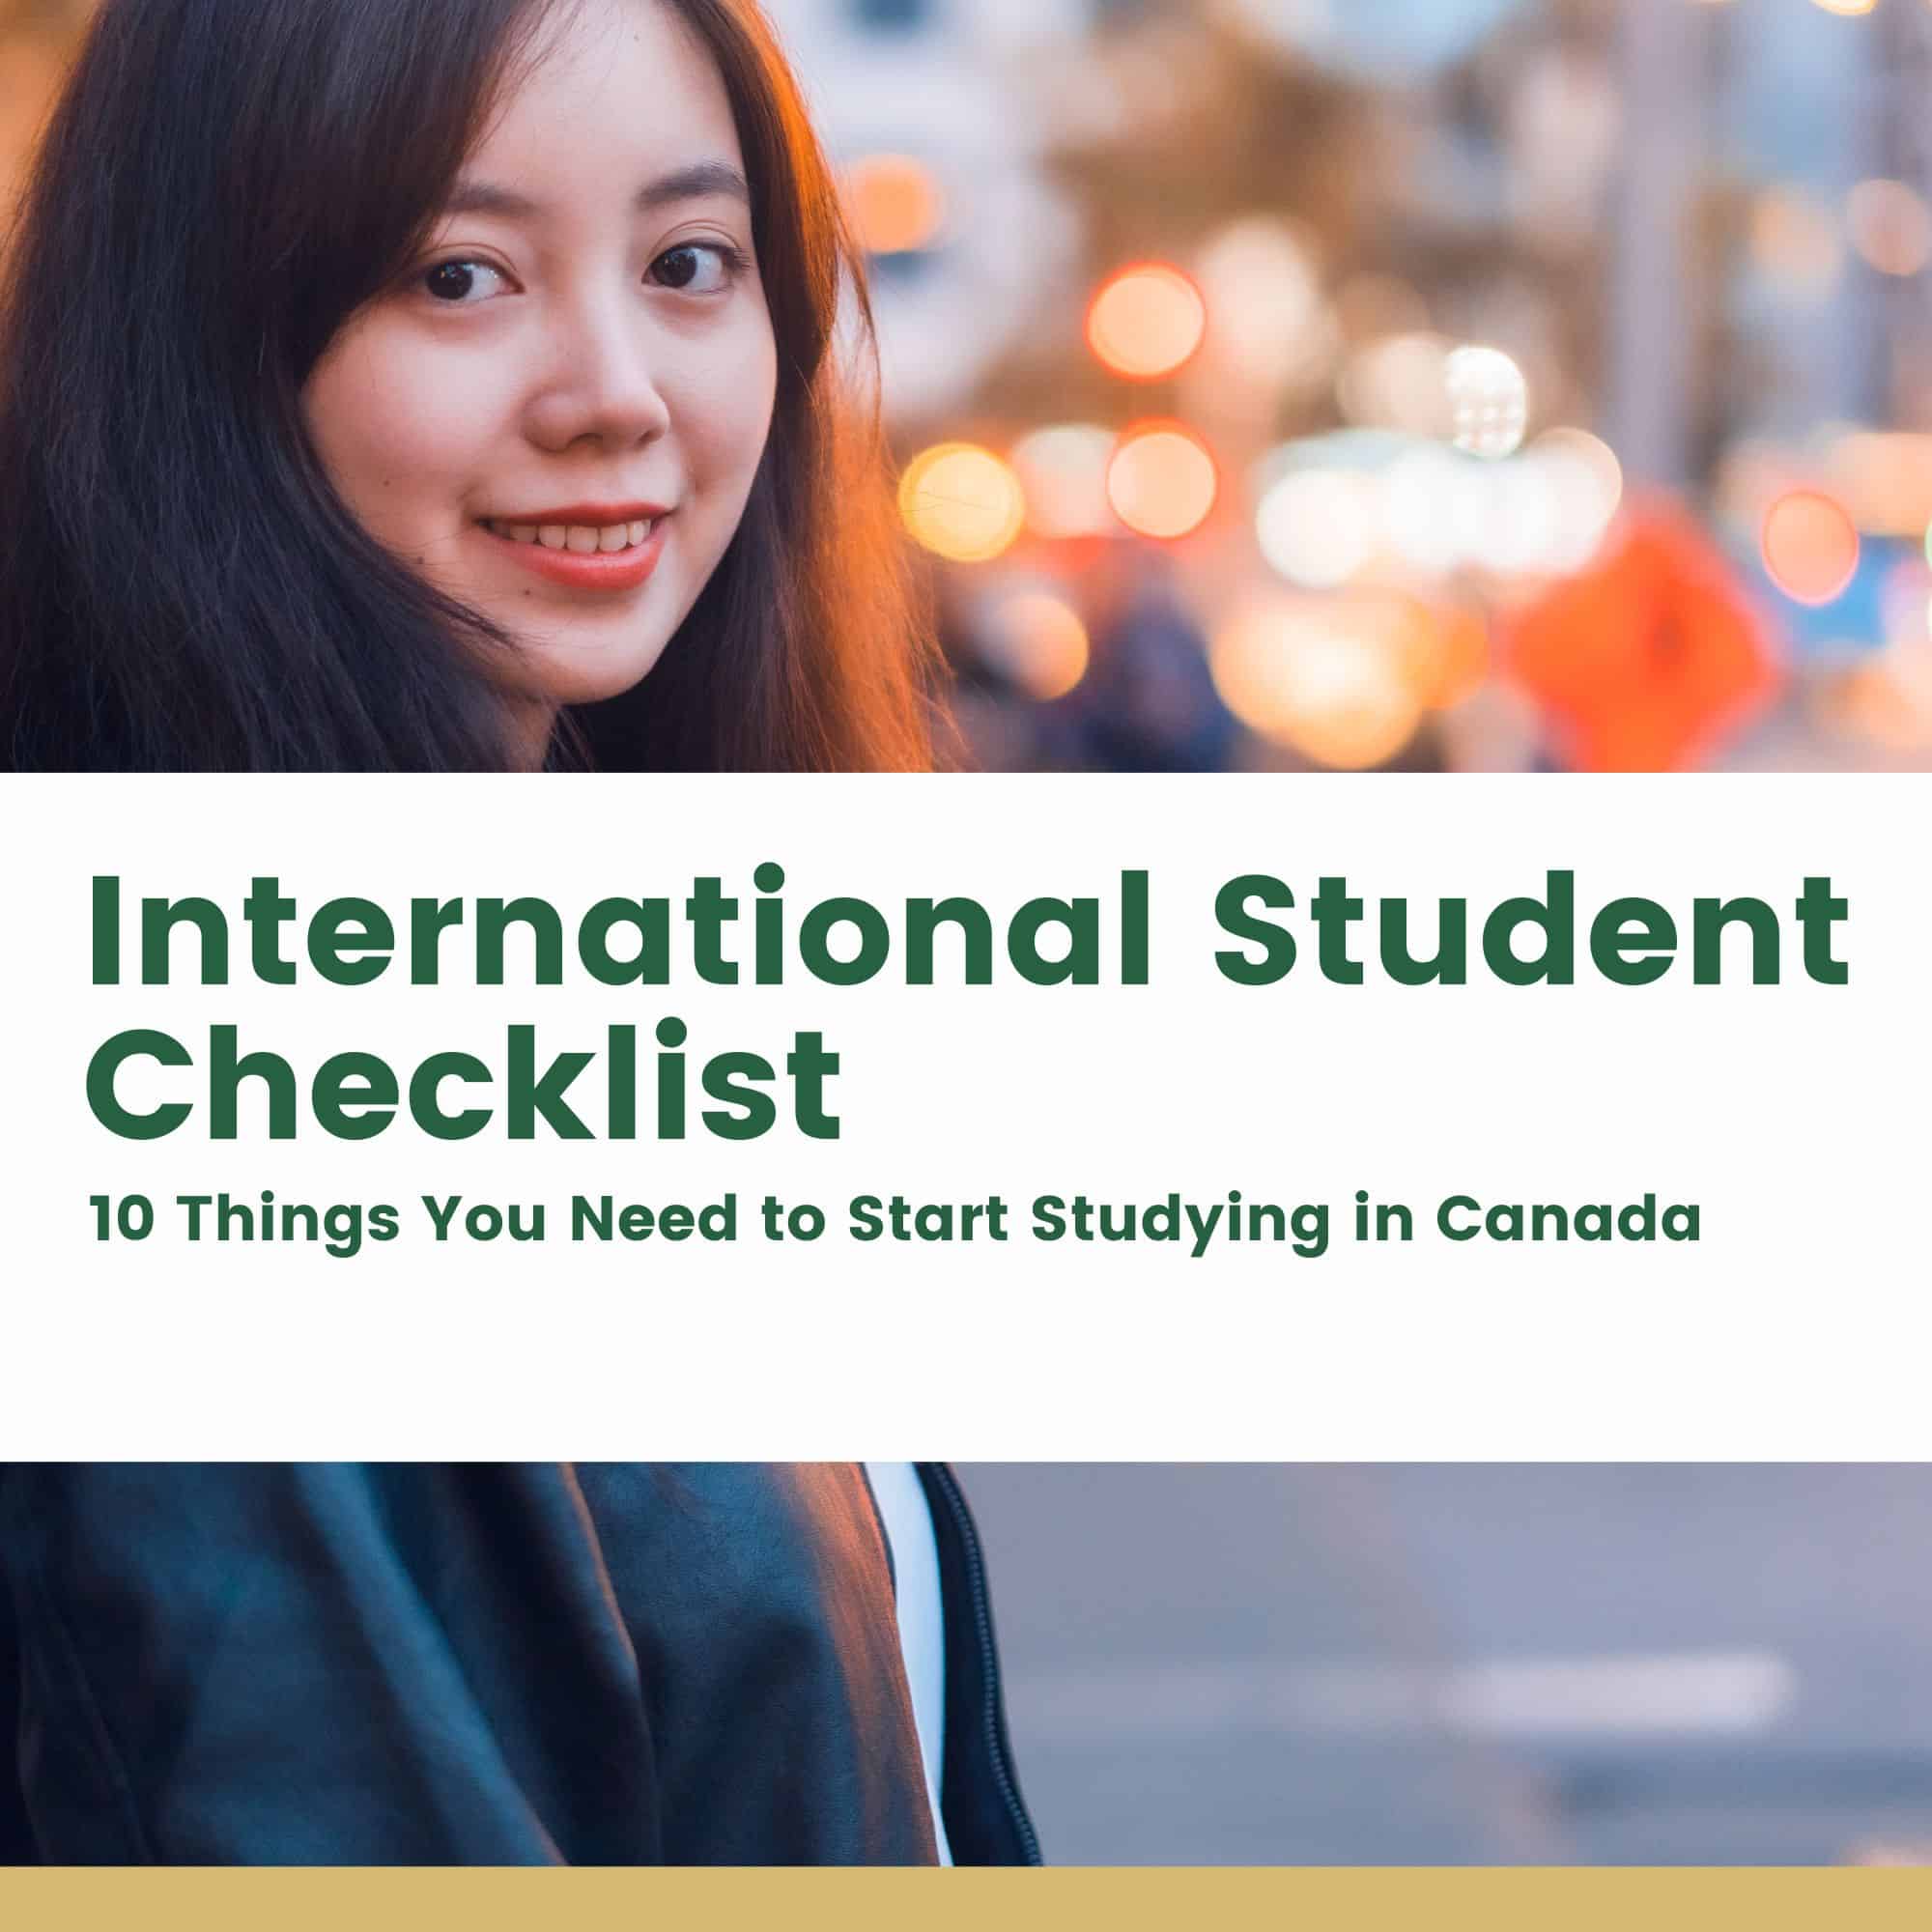 International Student Checklist